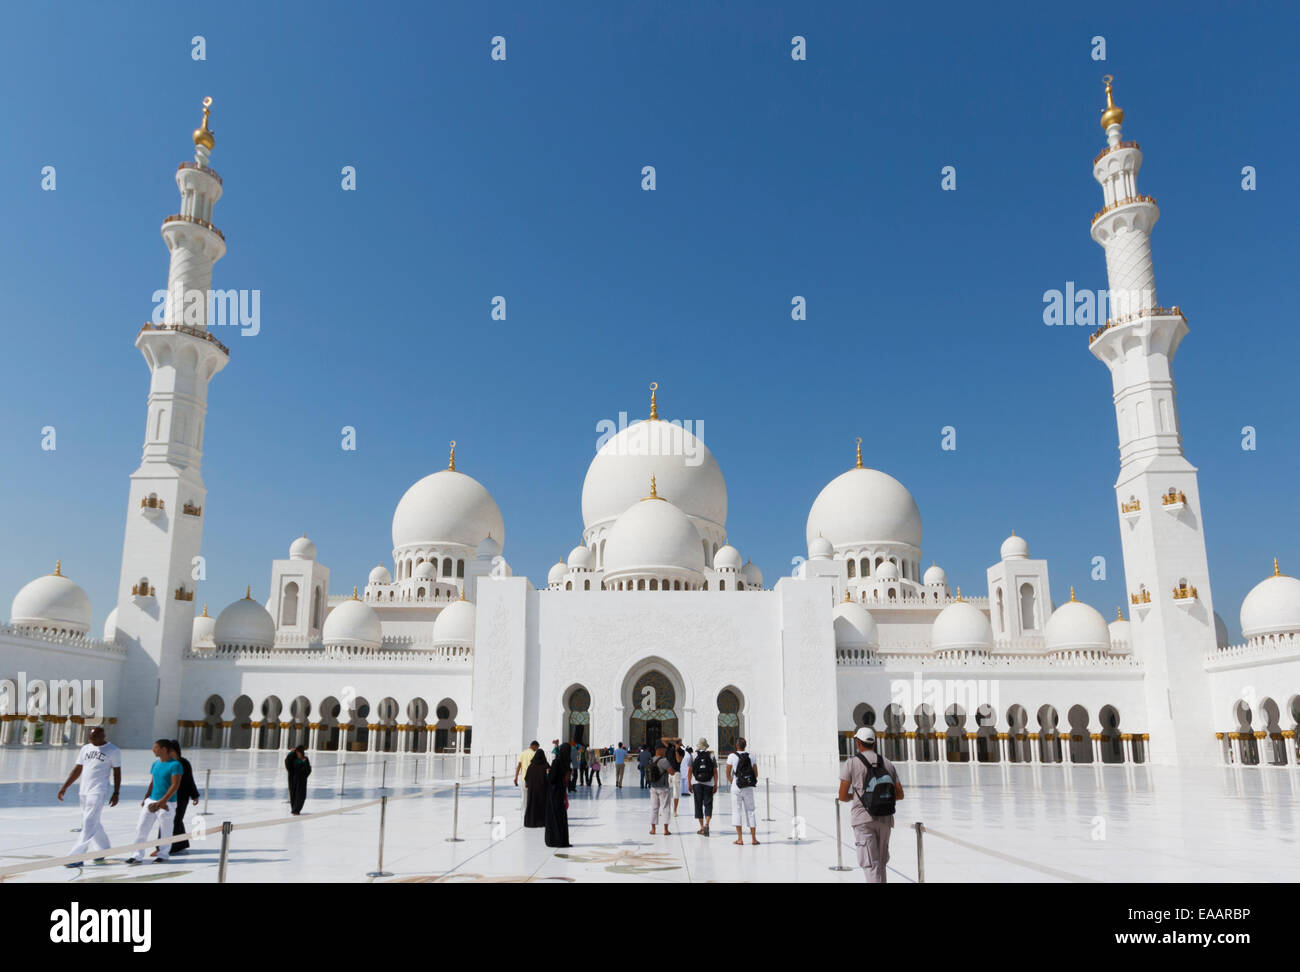 Sheikh Zayed Grand Mosque, Abu Dhabi, United Arab Emirates. Stock Photo